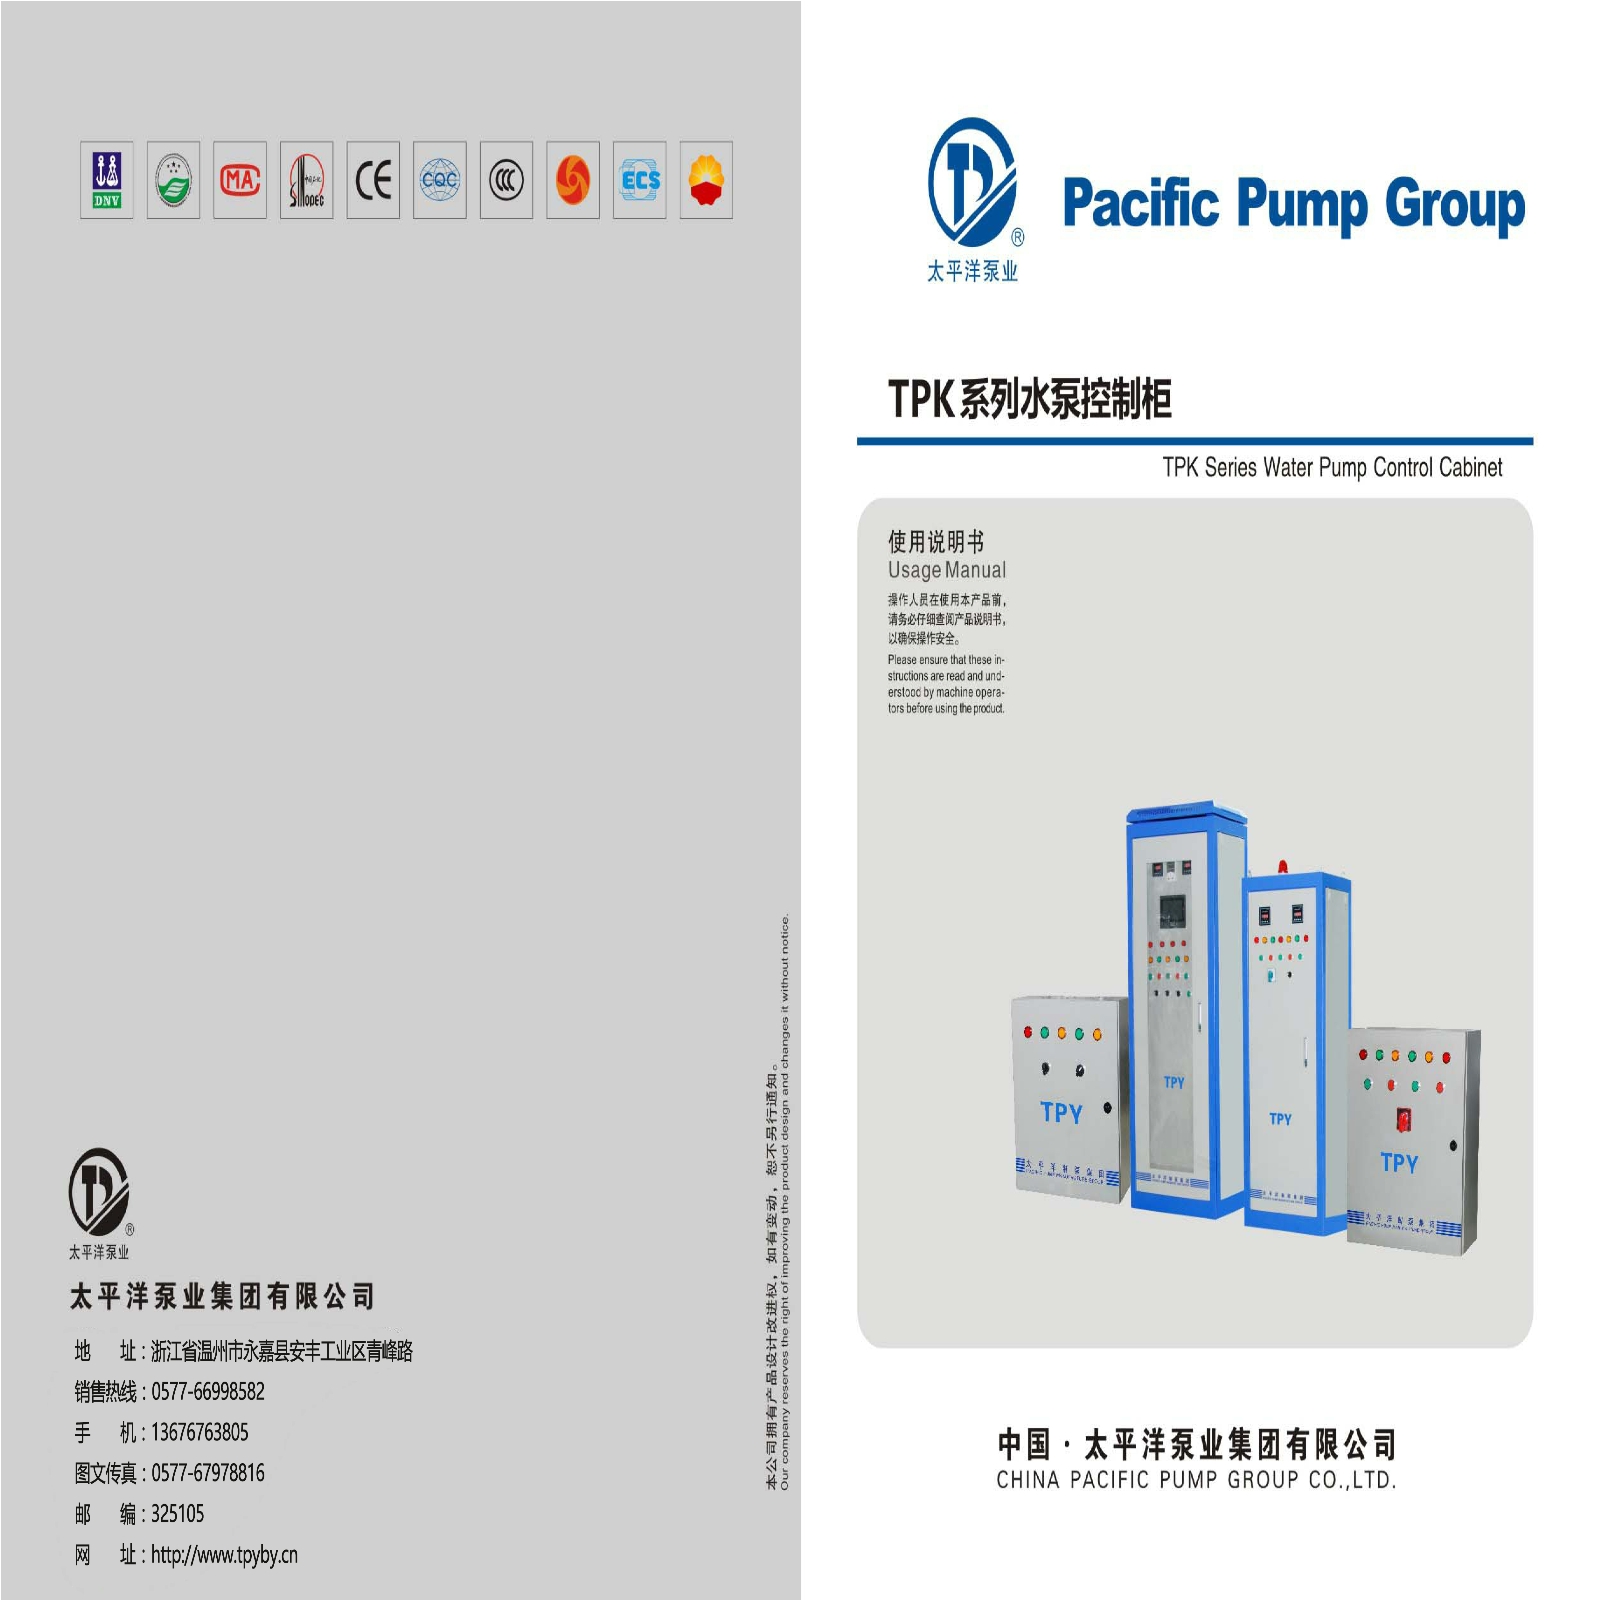 TPK系列水泵控制柜